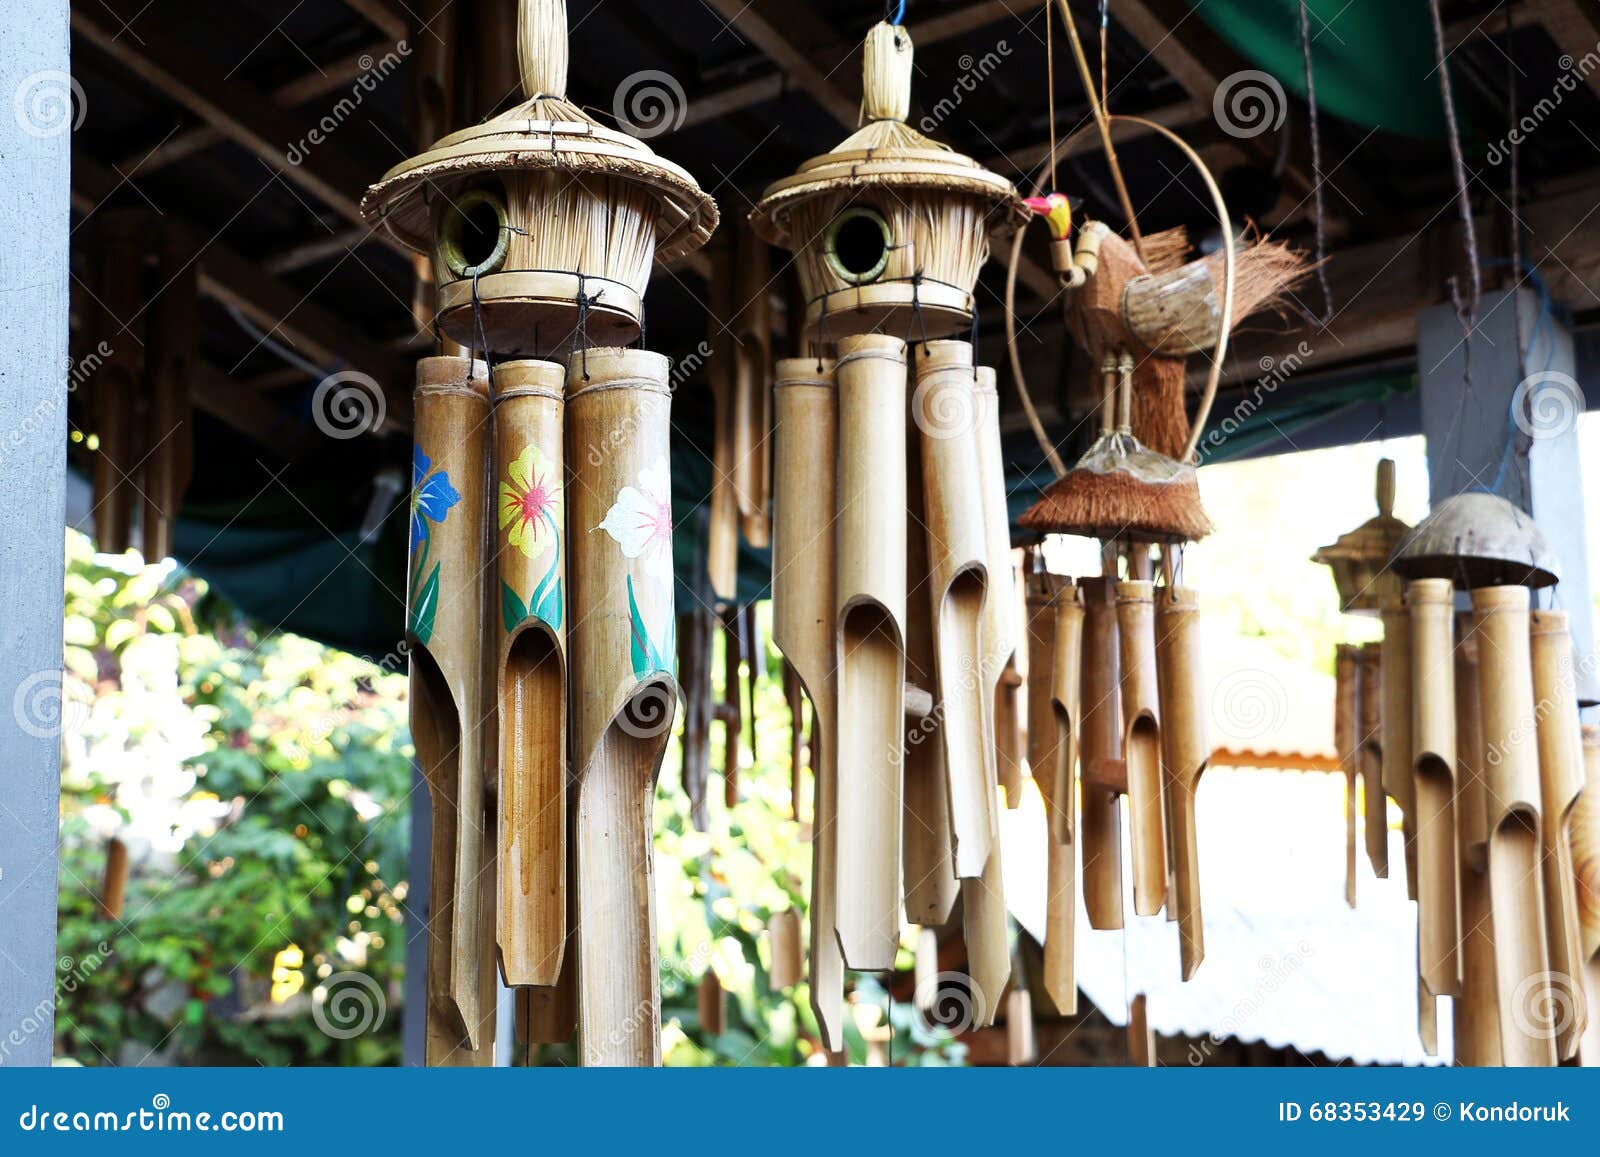 WUYANSE Carillones de Viento de bambú Regalo de Tono Profundo Carillones de Viento Hechos a Mano de Madera Interiores y Exteriores Colgantes de Pared Decoraciones 